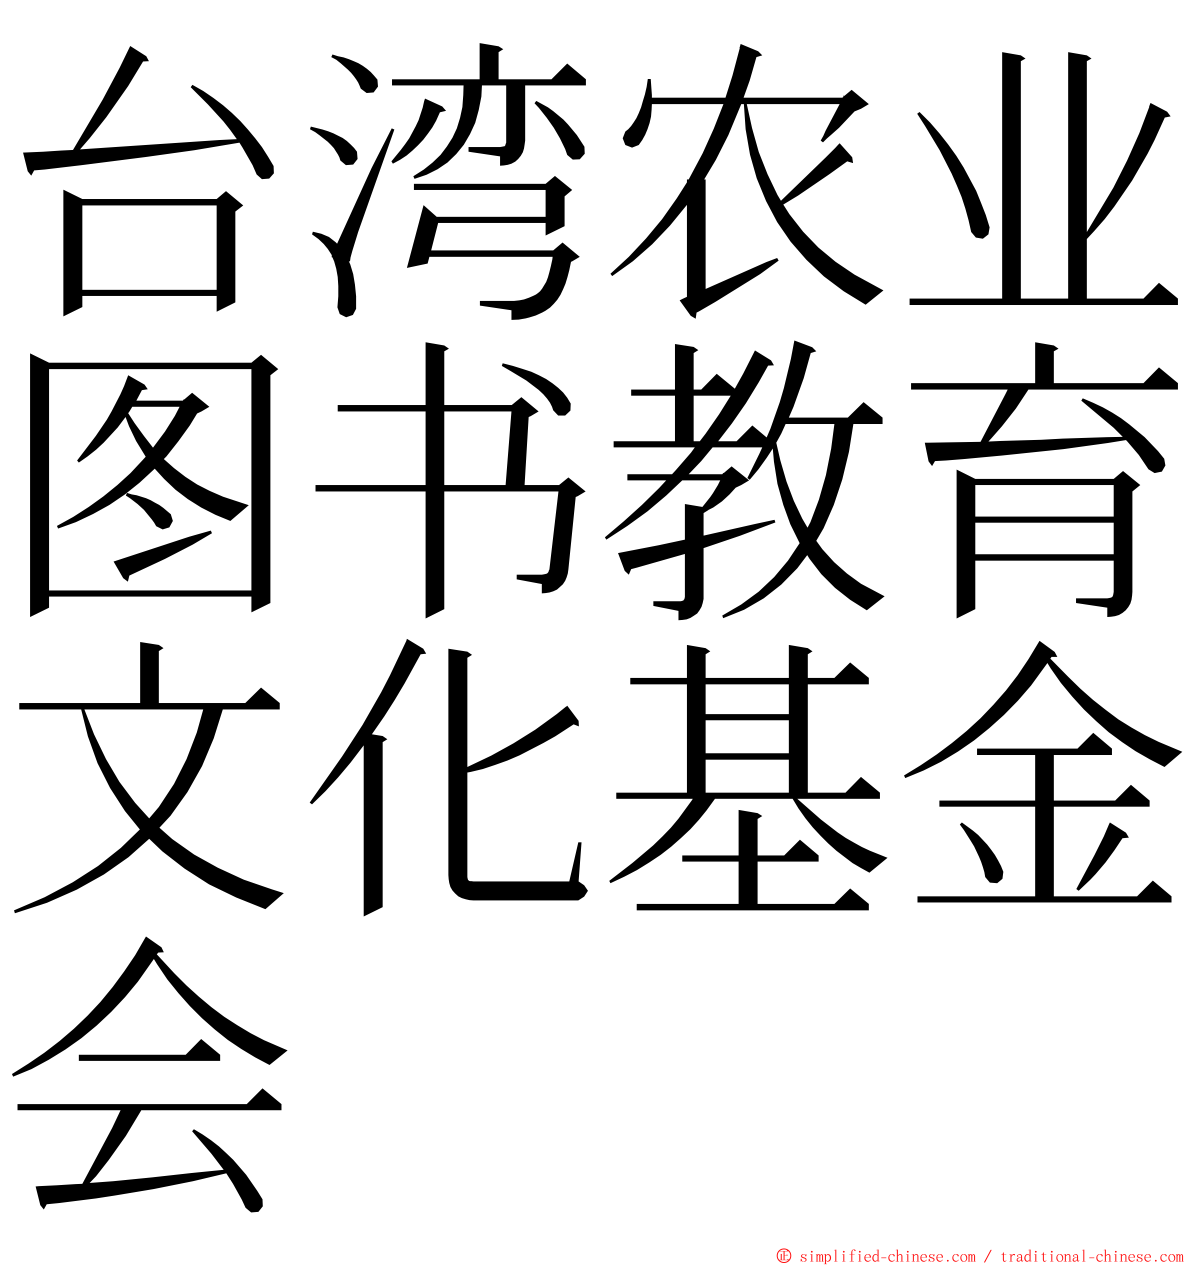 台湾农业图书教育文化基金会 ming font